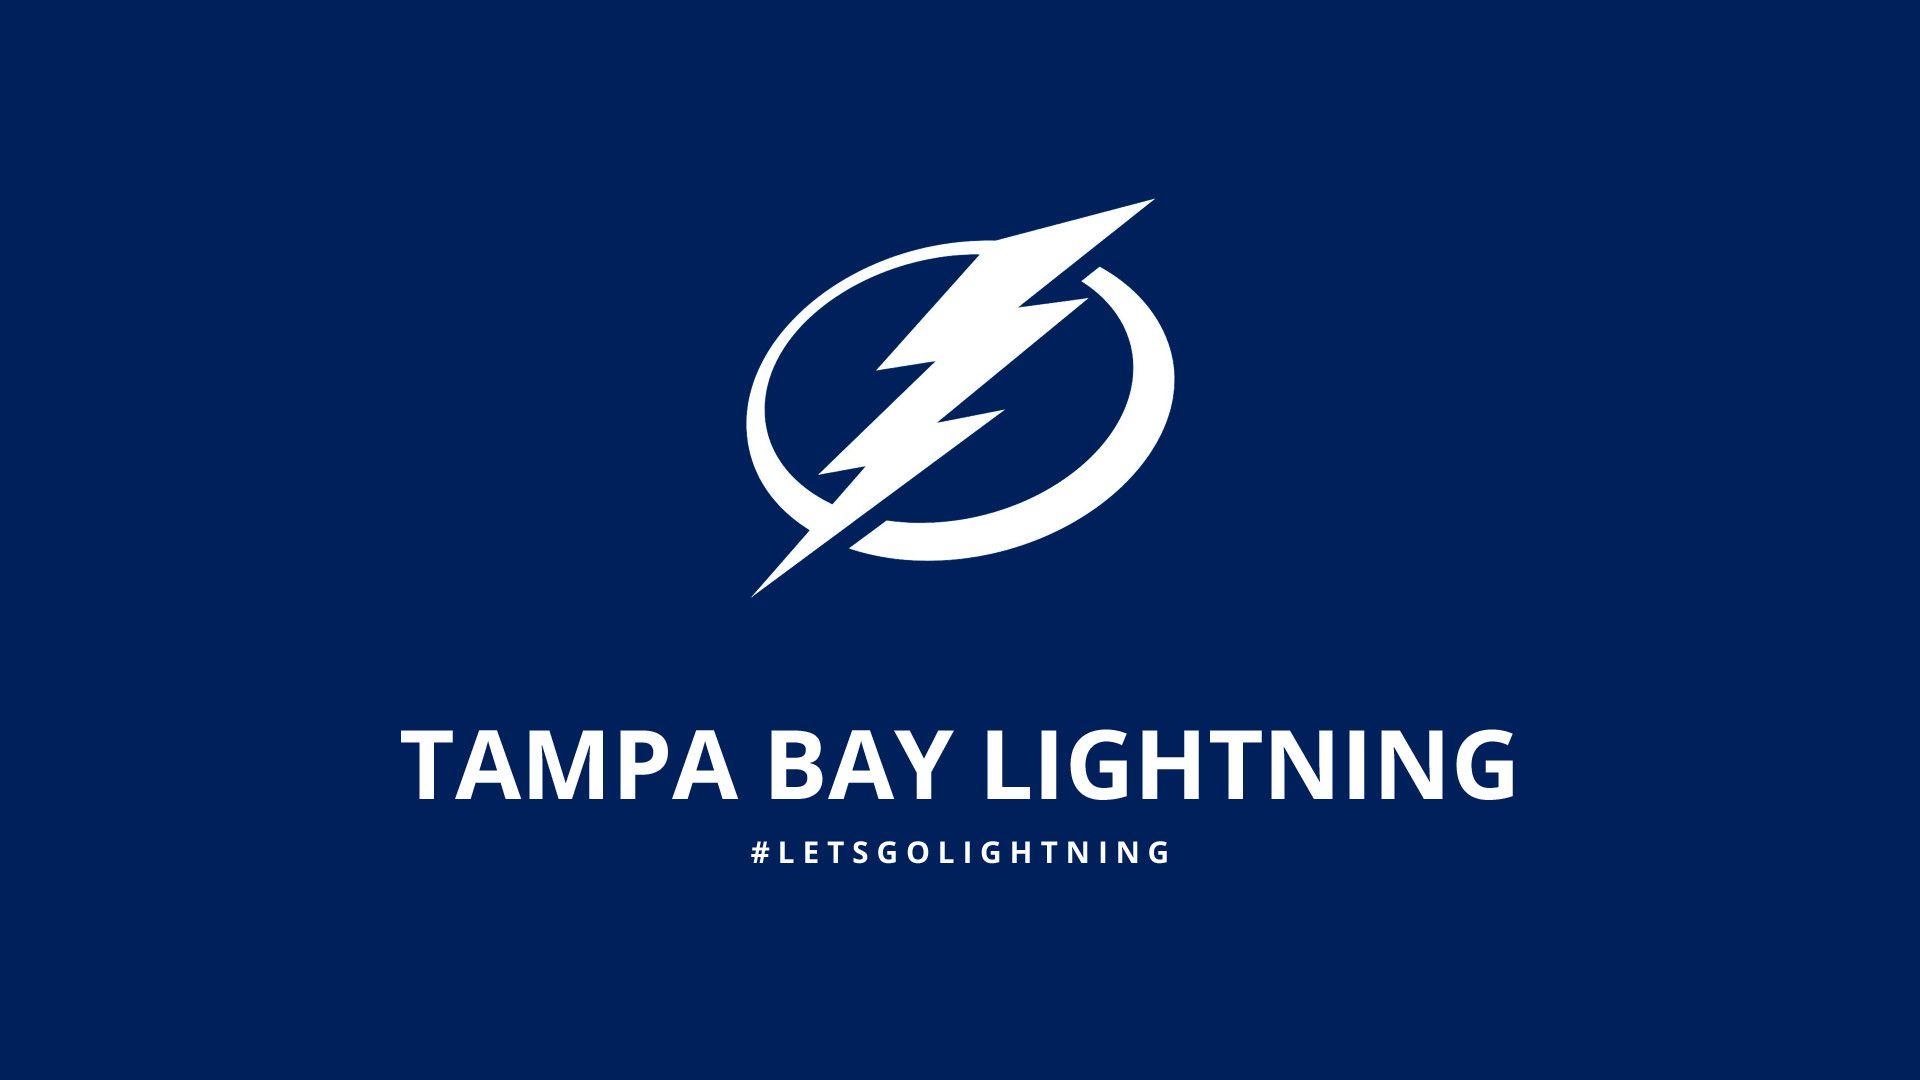 Hockey Tampa Bay Lightning wallpaper, 1600x1000